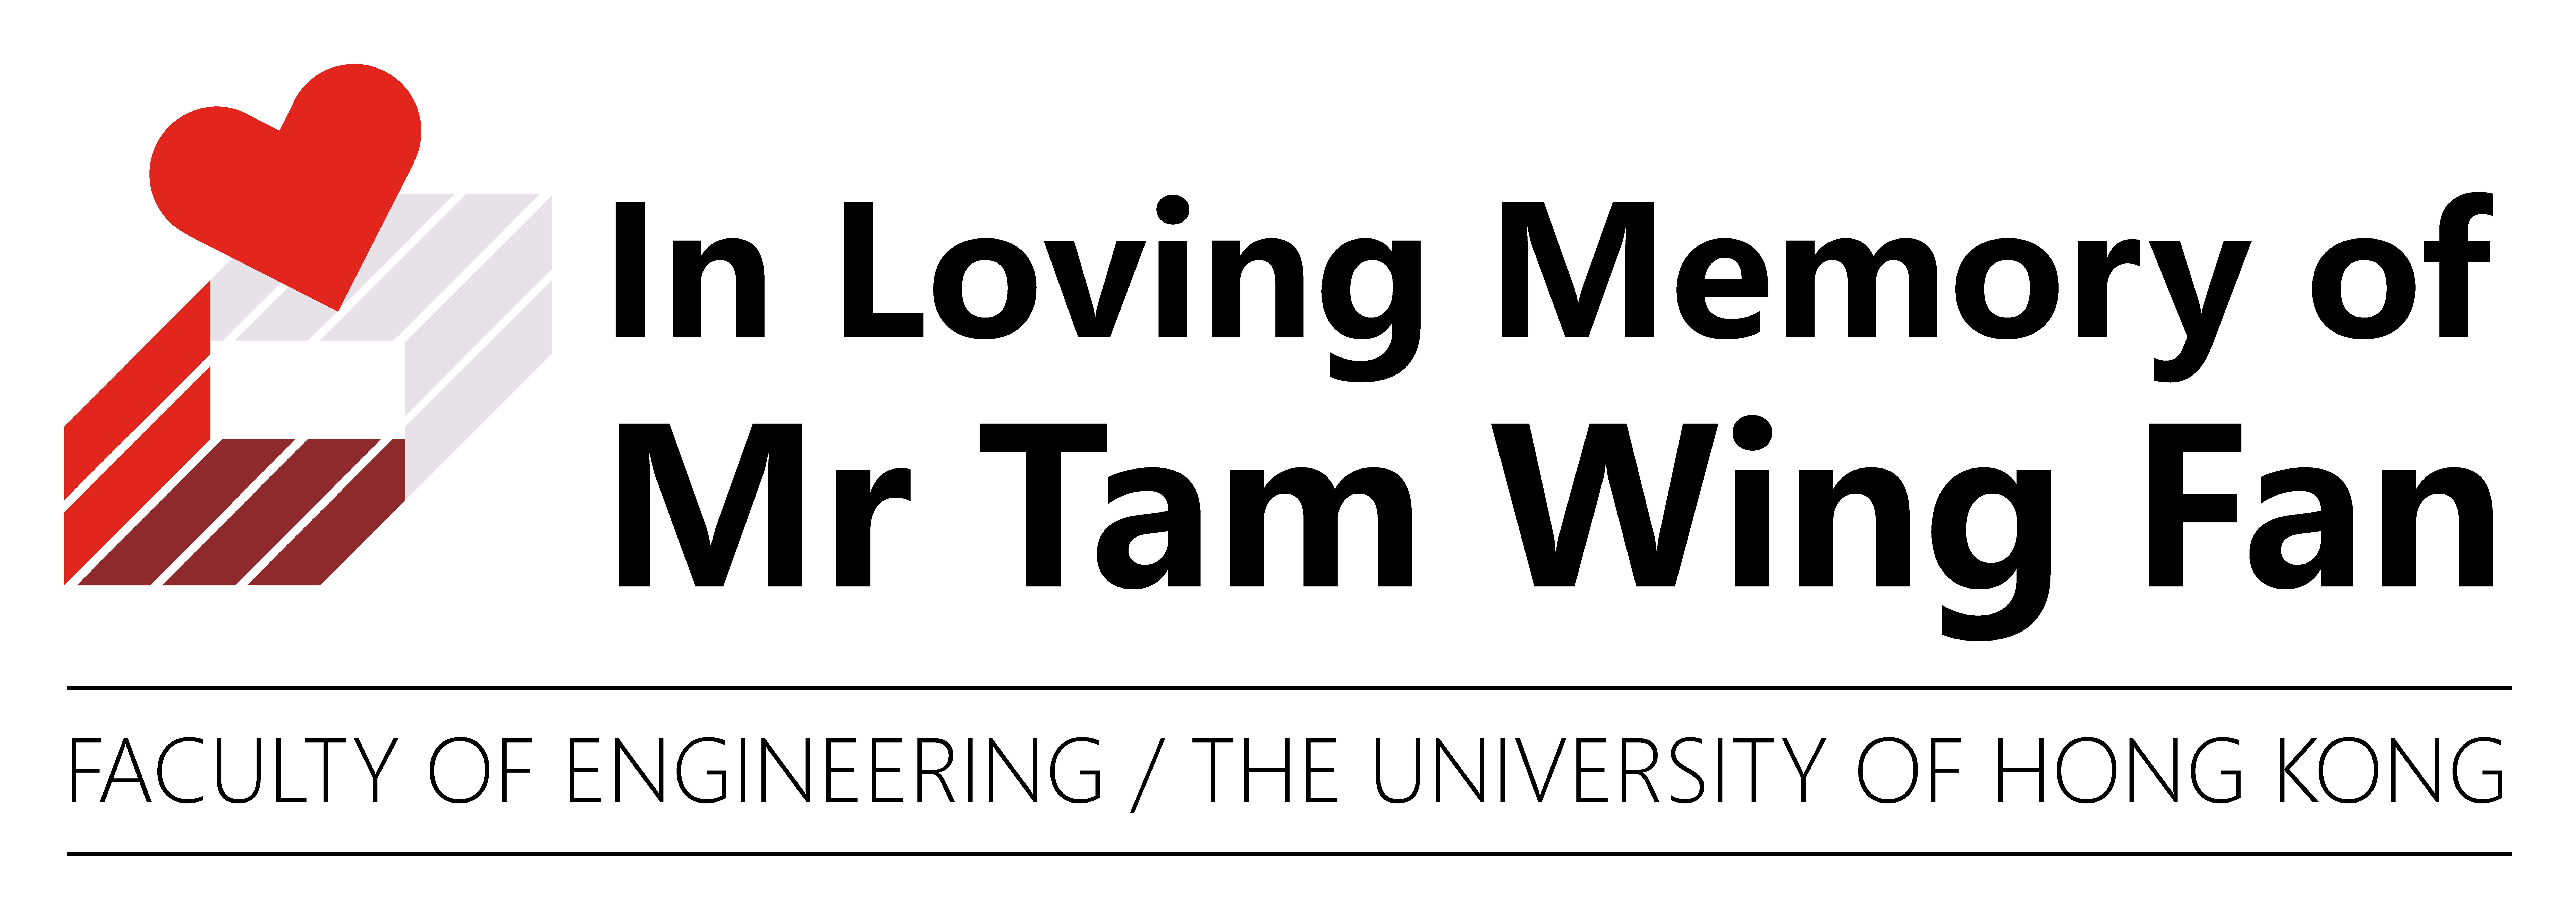 In Loving Memory of Mr Tam Wing Fan